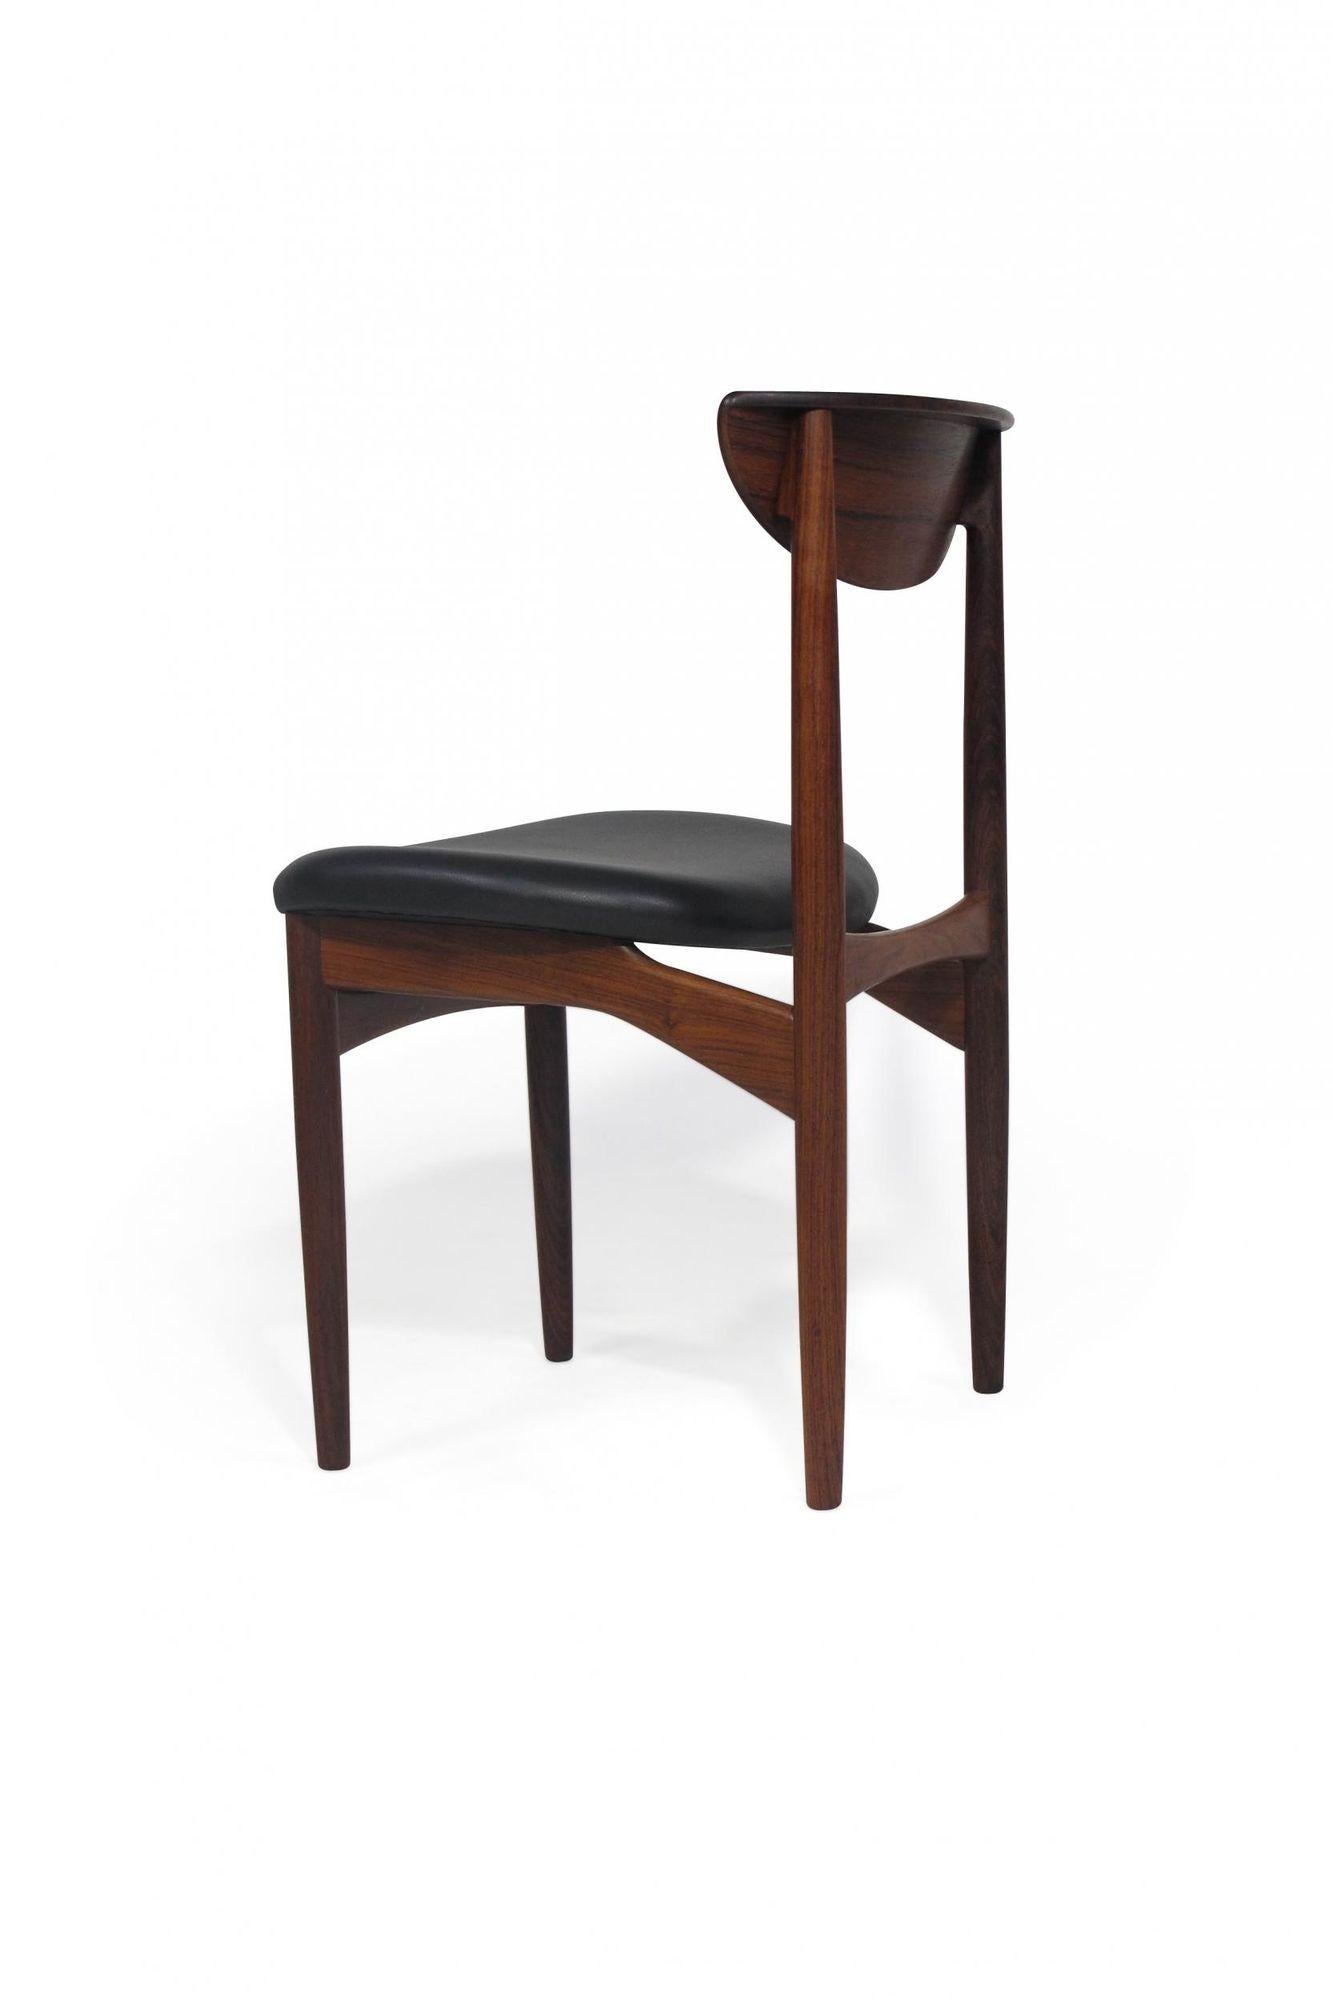 Chaises de salle à manger danoises conçues par Kurt Ostervig pour K.P Møbelfabrik, 1959, Danemark. Les chaises sont fabriquées à la main en bois de rose brésilien massif avec des dossiers sculptés. Le bois utilisé est le palissandre le plus fin, qui